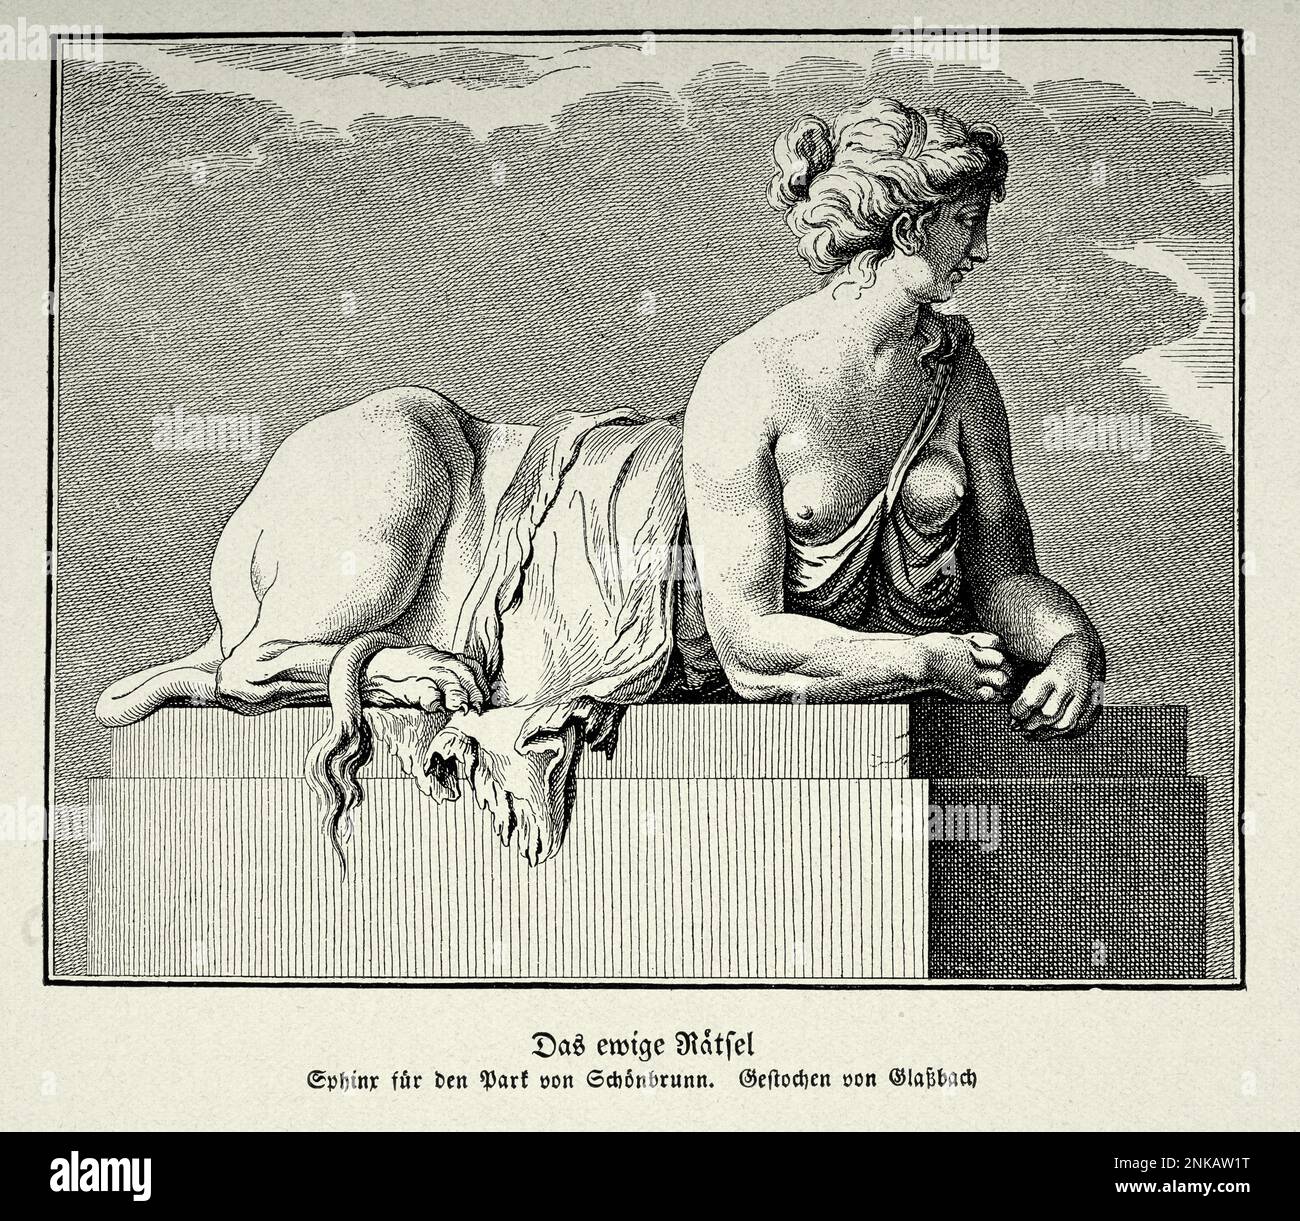 Illustration vintage le mystère éternel, Sphinx, créature mythique avec la tête d'un homme, le corps d'un lion Banque D'Images